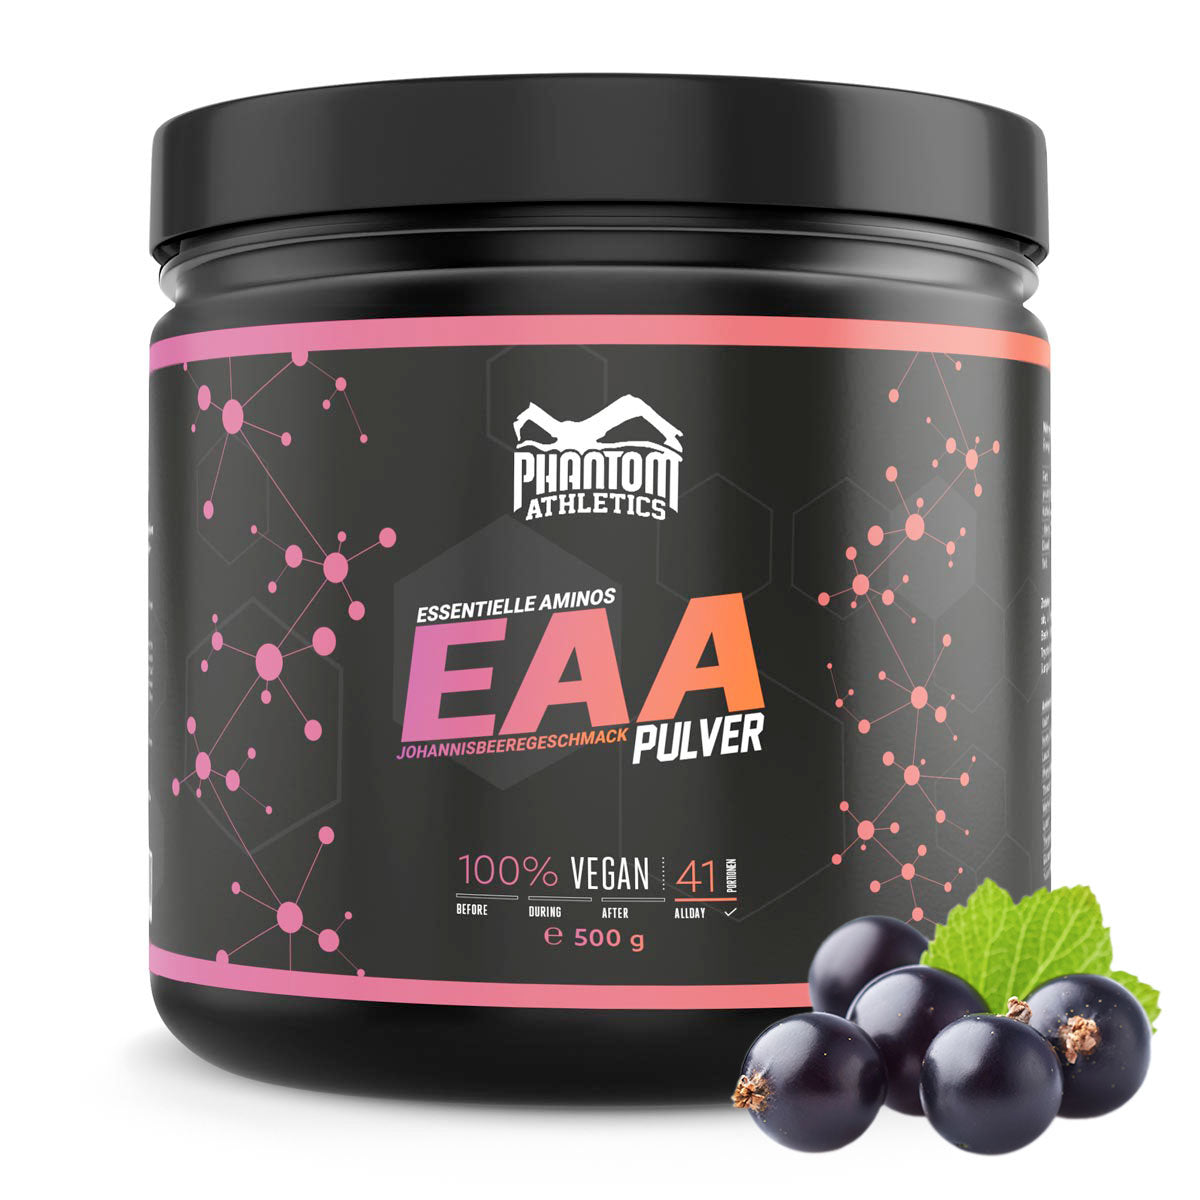 Phantom EAA - Essensielle aminosyrer med solbærsmak. For optimal pleie innen kampsport.